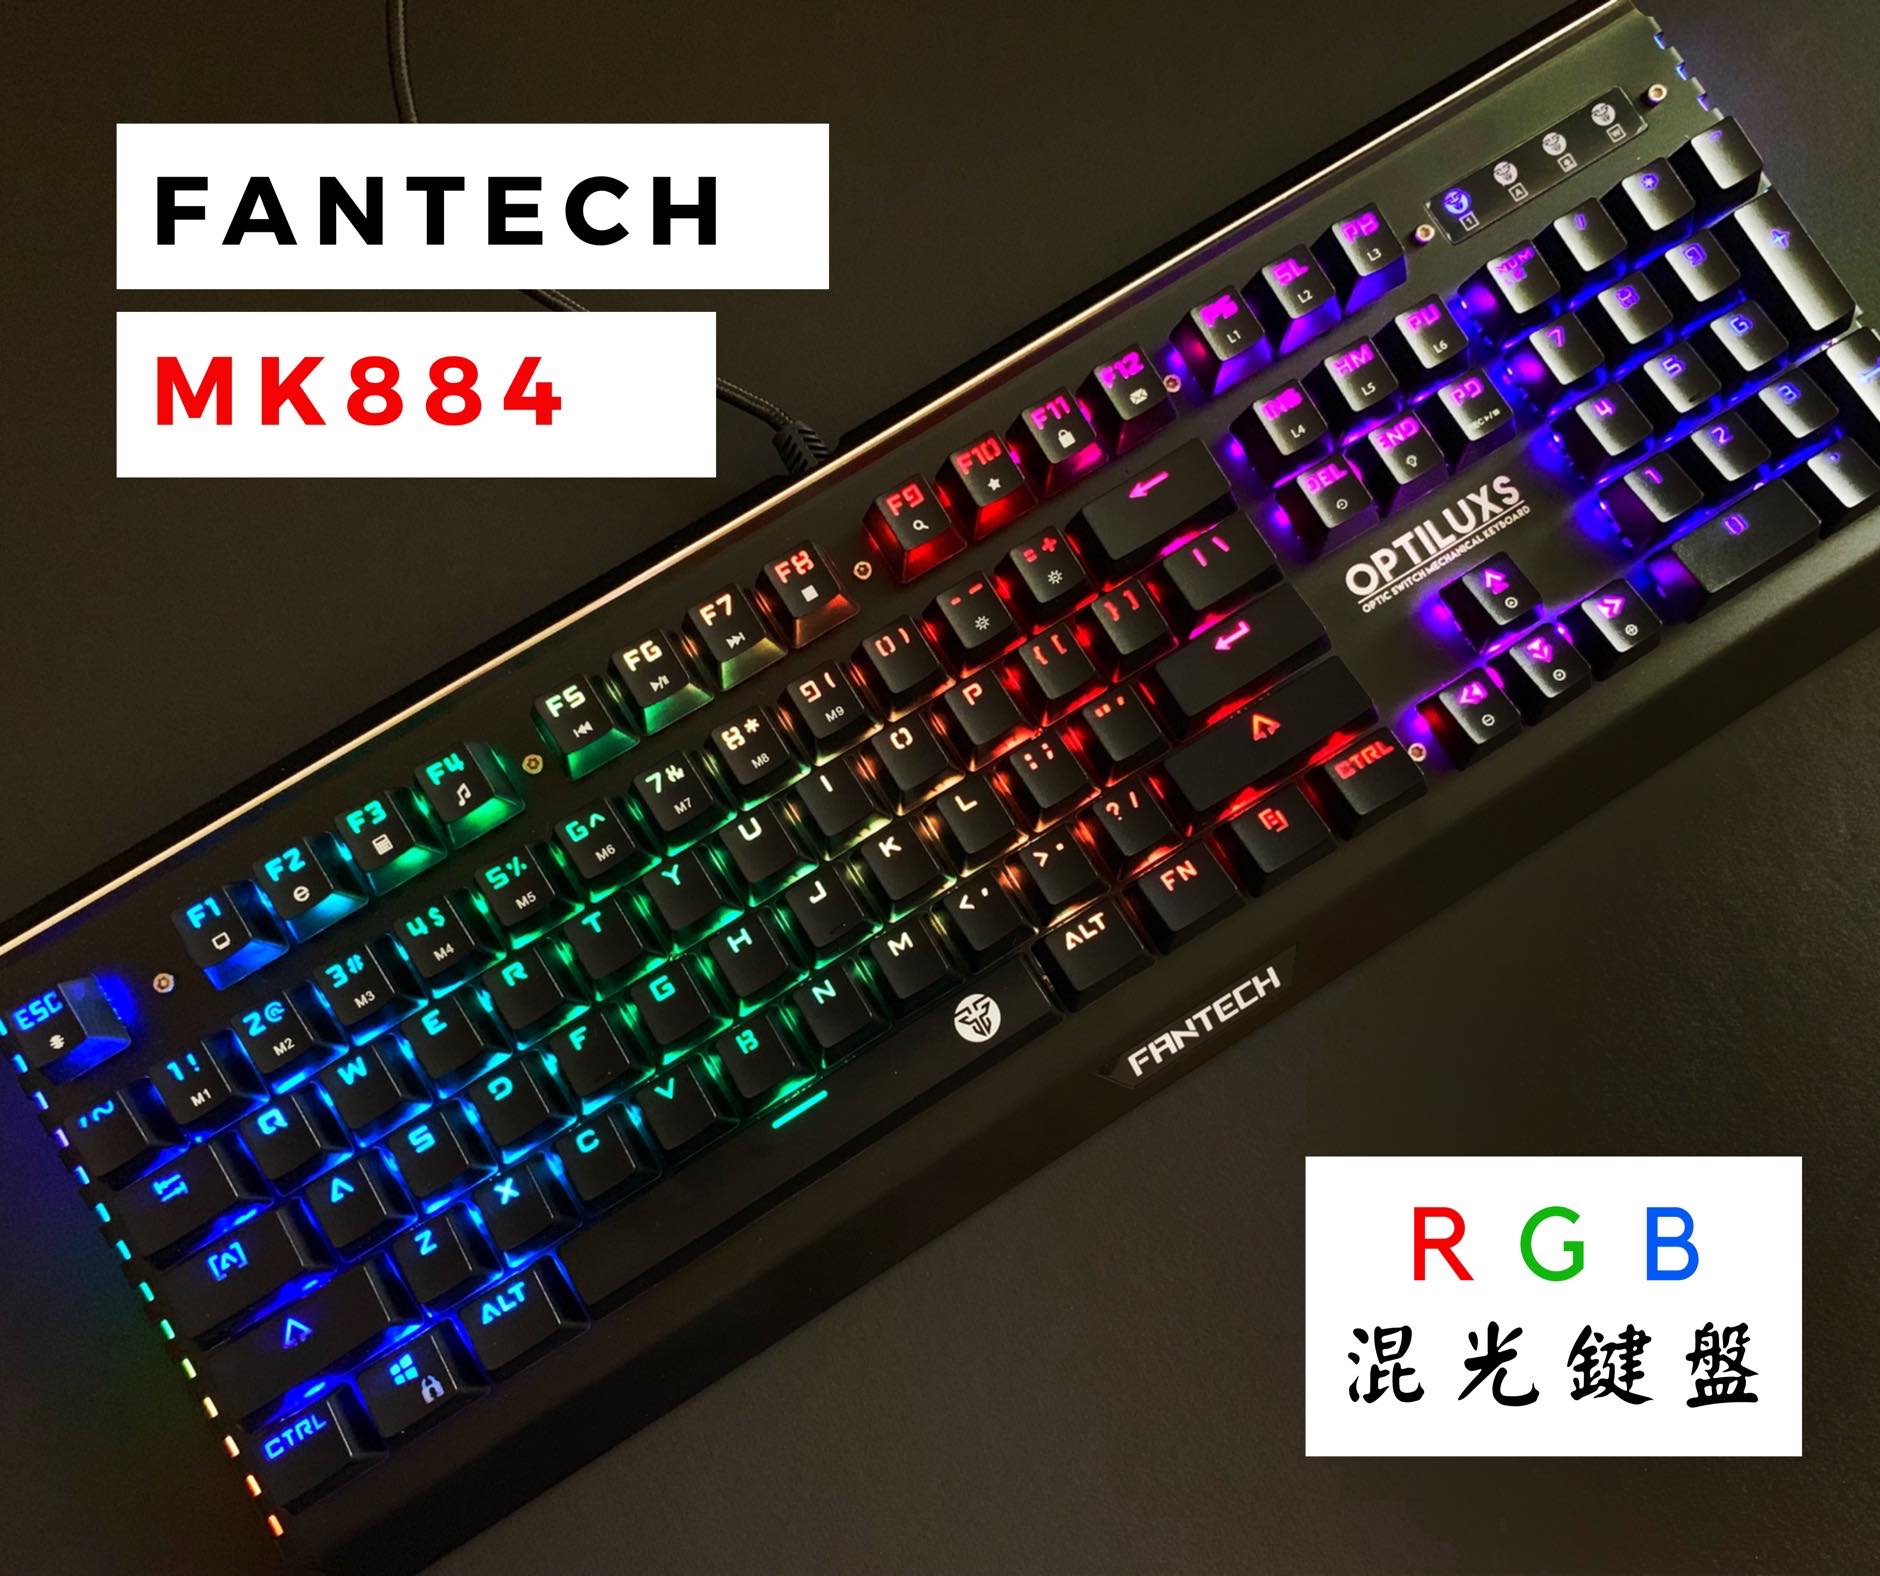 FANTECH MK884 機械式電競鍵盤 - RGB多彩燈光設計、光軸採用最新光學開關技術 - 鍵盤 - 科技生活 - teXch